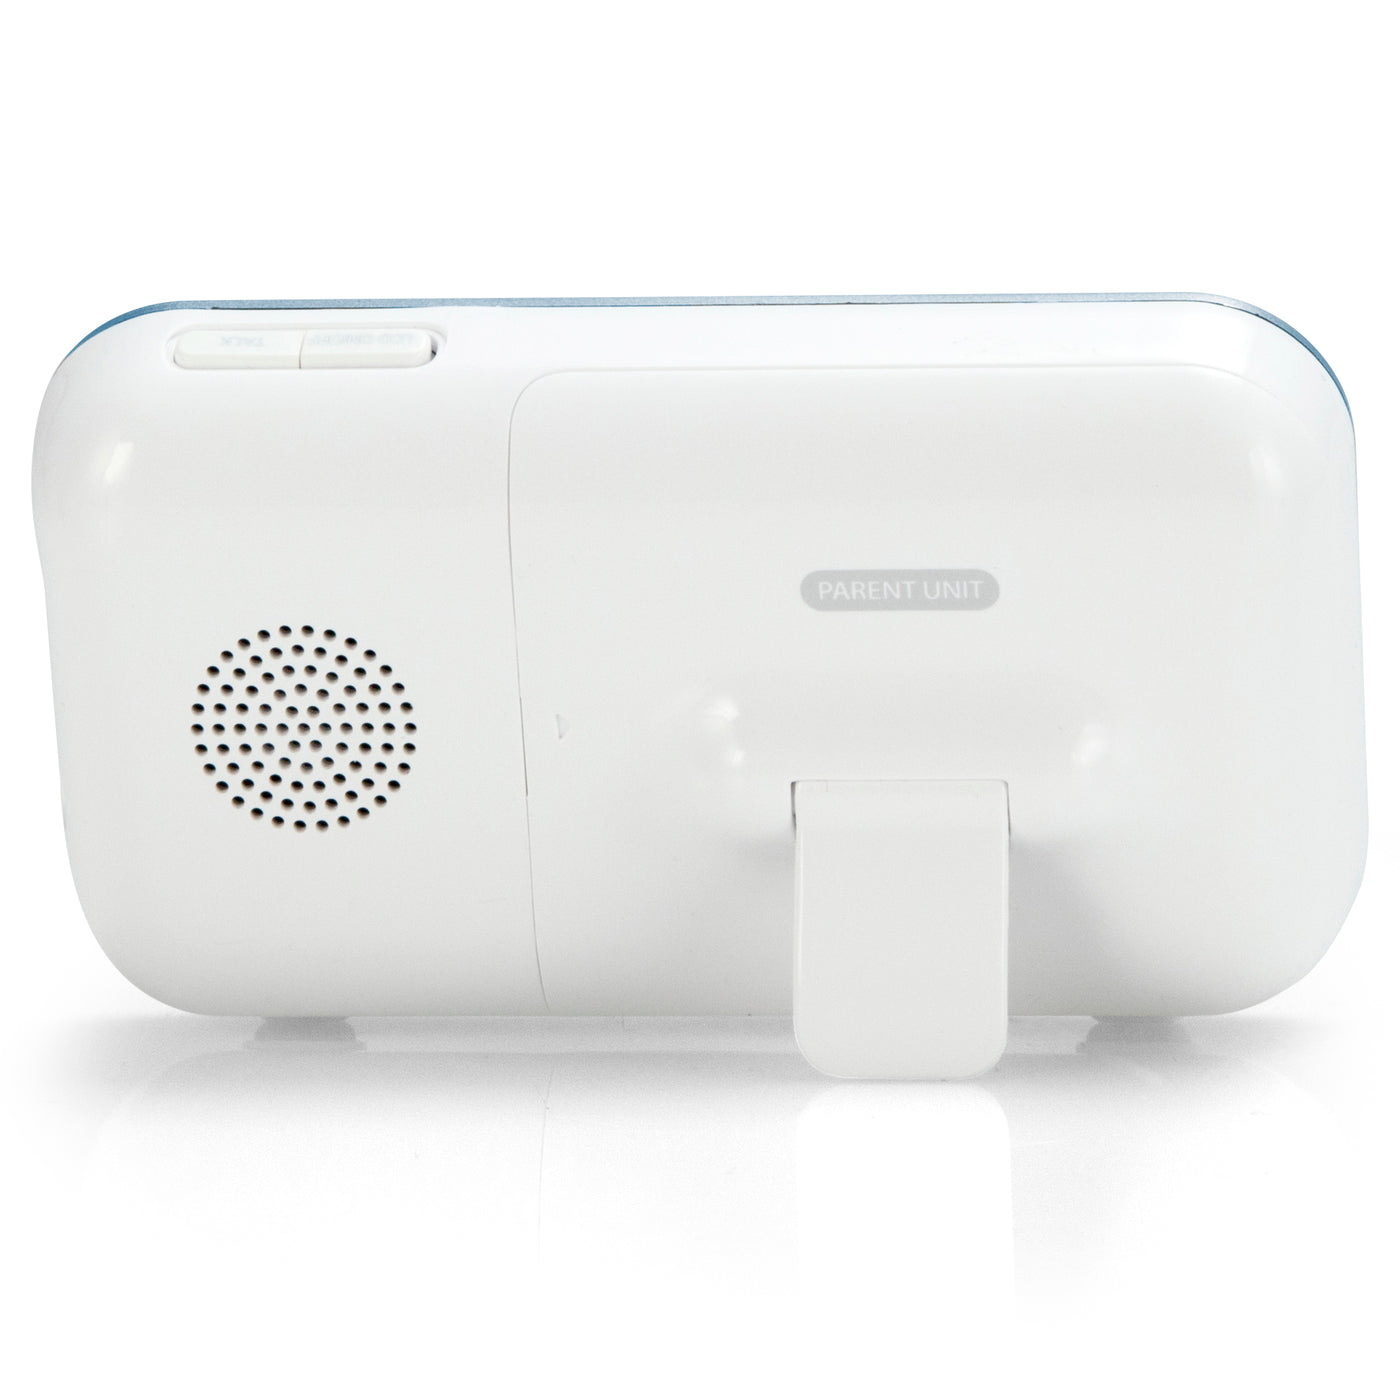 Alecto DVM-76 - Babyphone avec caméra et écran couleur 2.8", blanc/anthracite